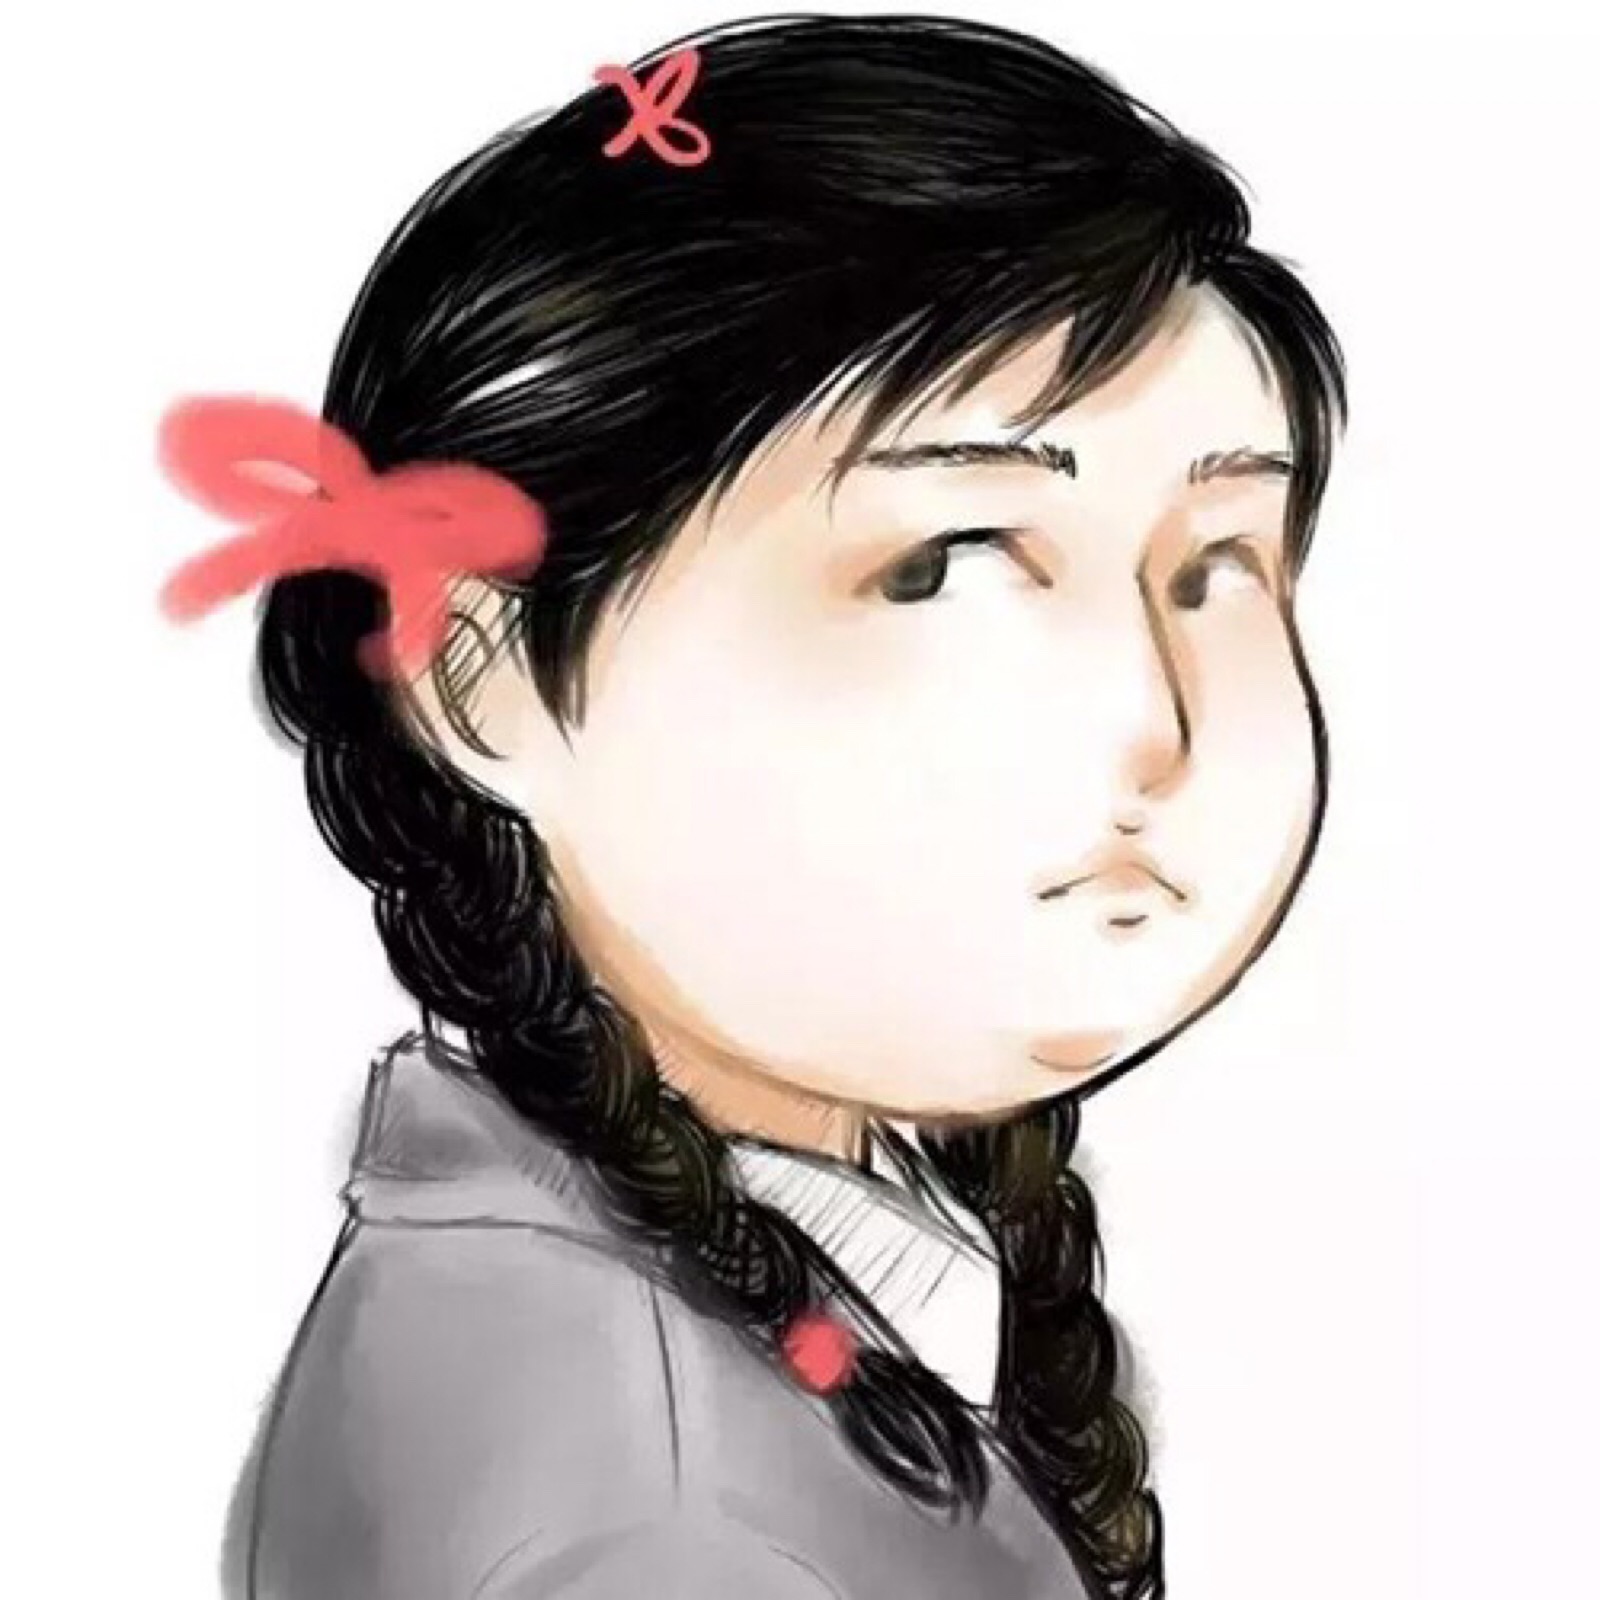 蠢 - 斗图大会 - 蘑菇头表情库 - 真正的斗图网站 - dou.yuanmazg.com